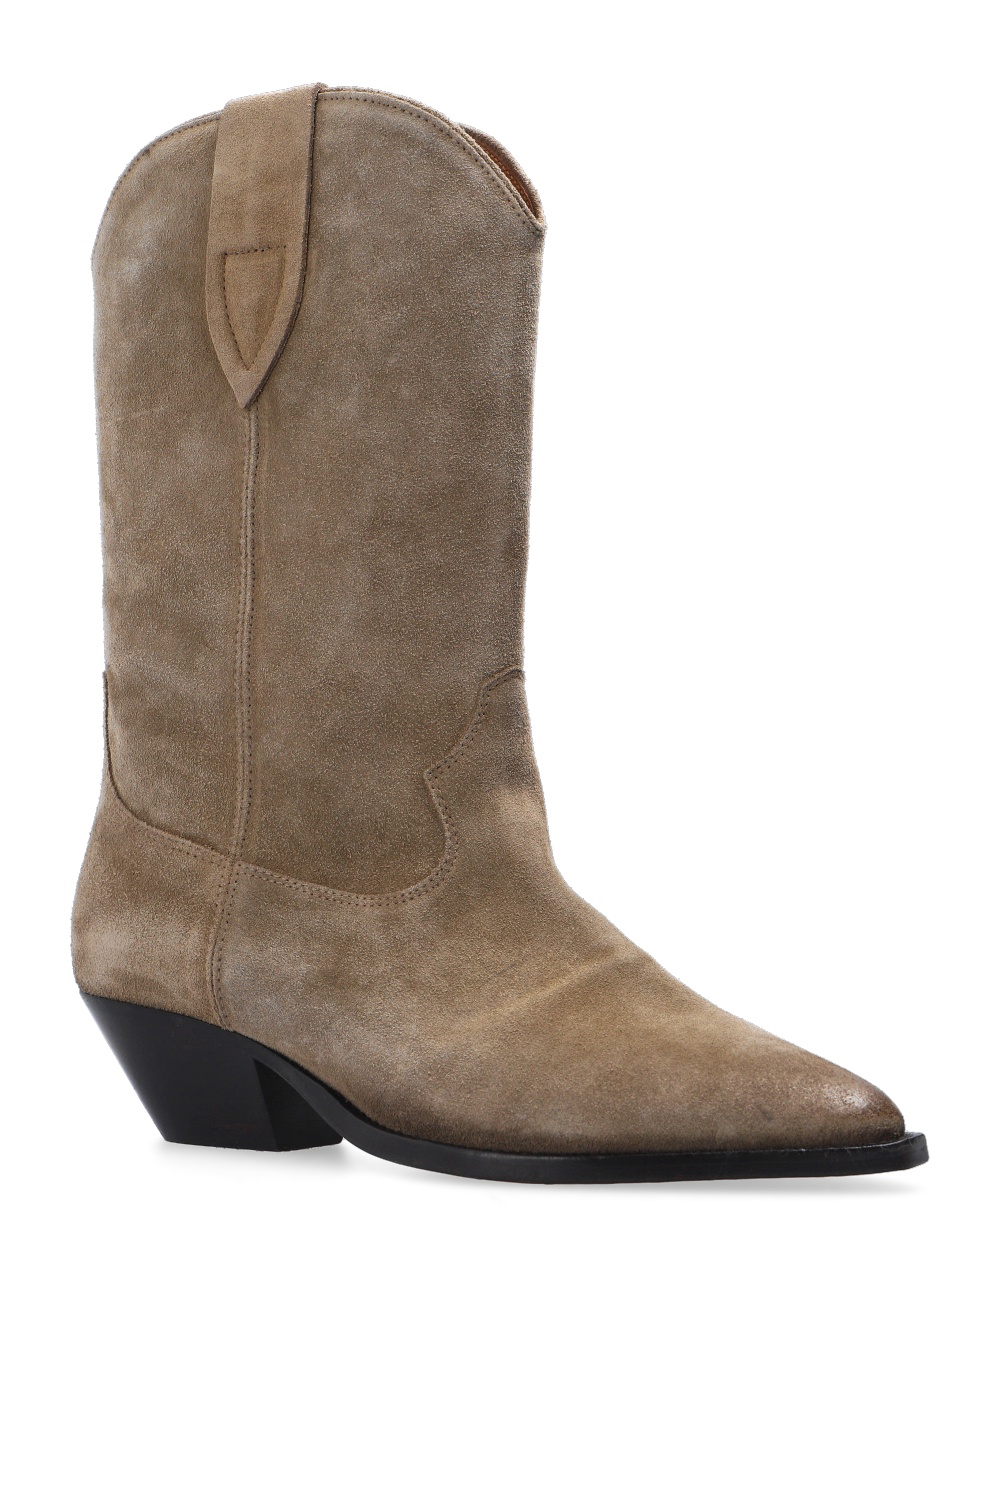 Isabel Marant ‘Washed Iconic’ boots